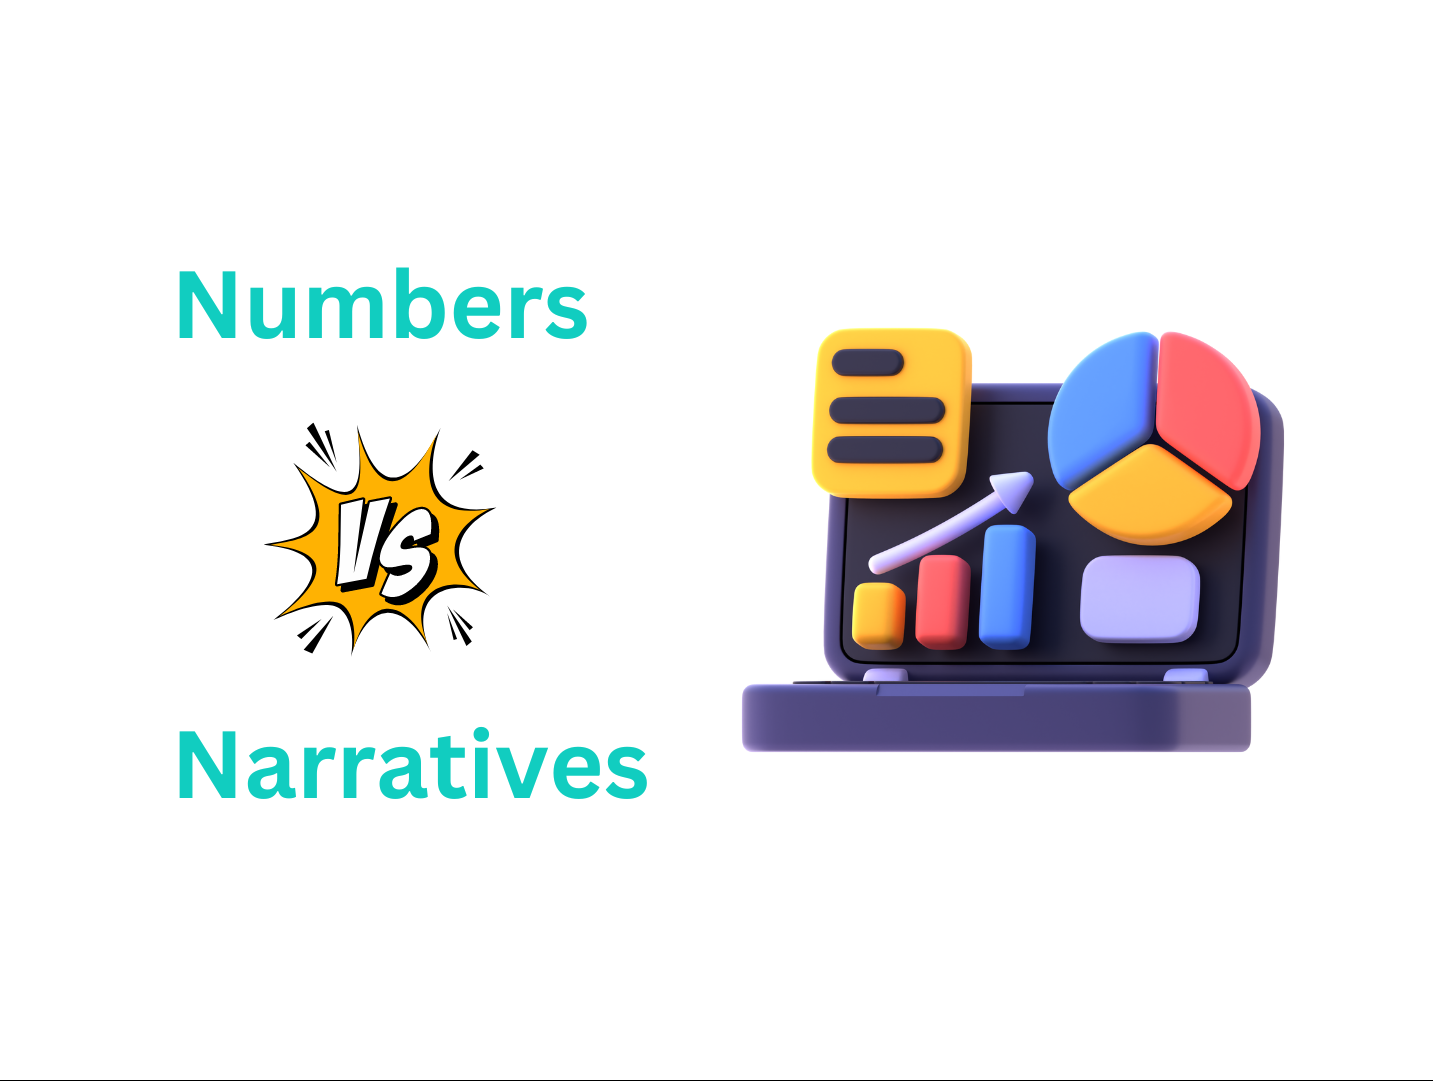 Numbers or Narratives? Understanding Quantitative vs. Qualitative Data​